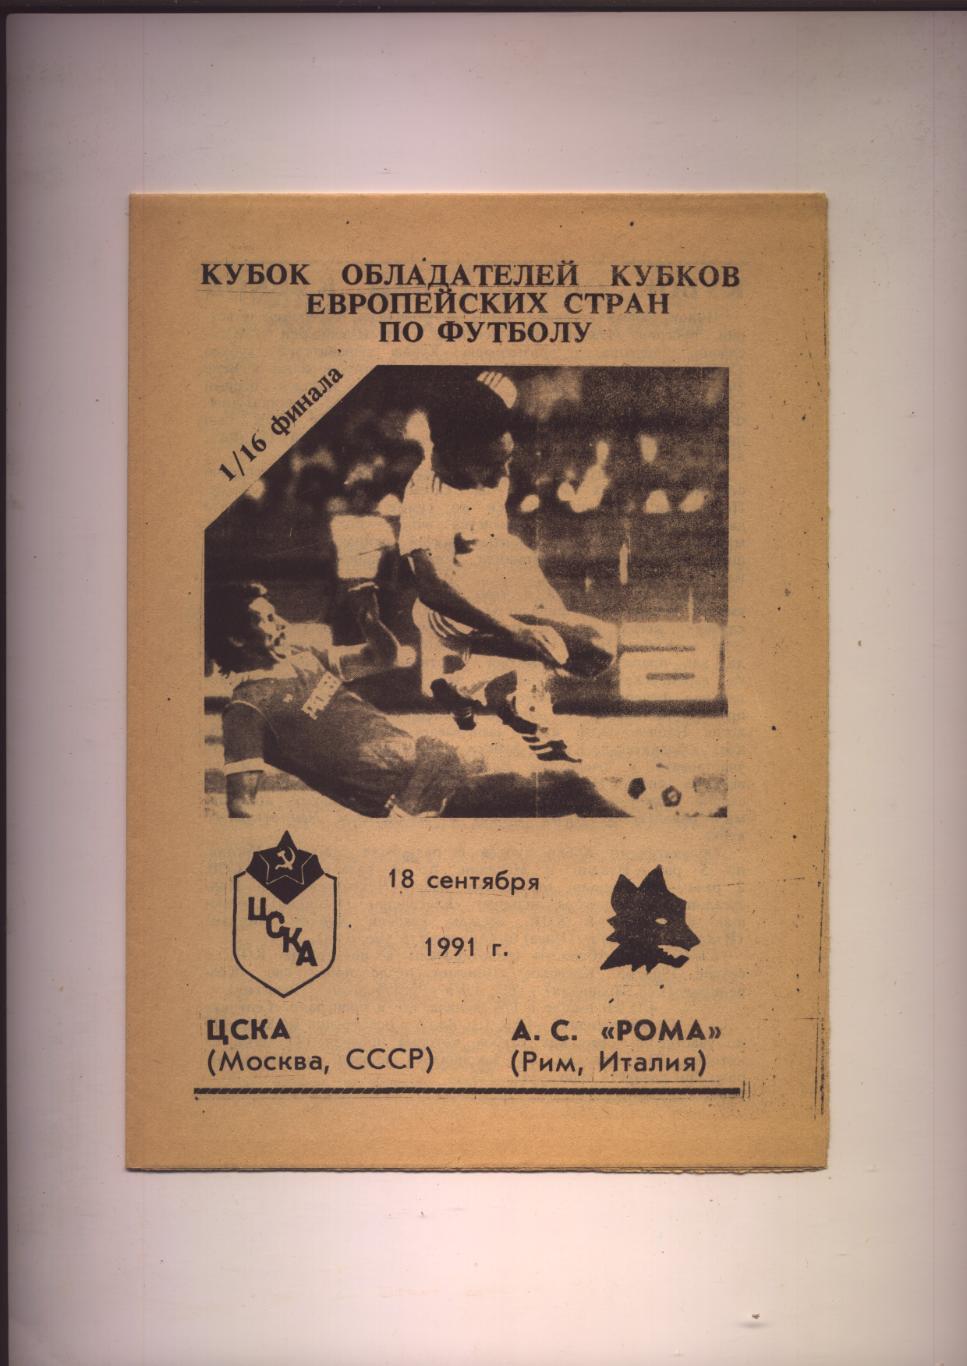 Программа Кубок обладателей Кубков ЦСКА Москва - Рома Италия 18 09 1991 г.